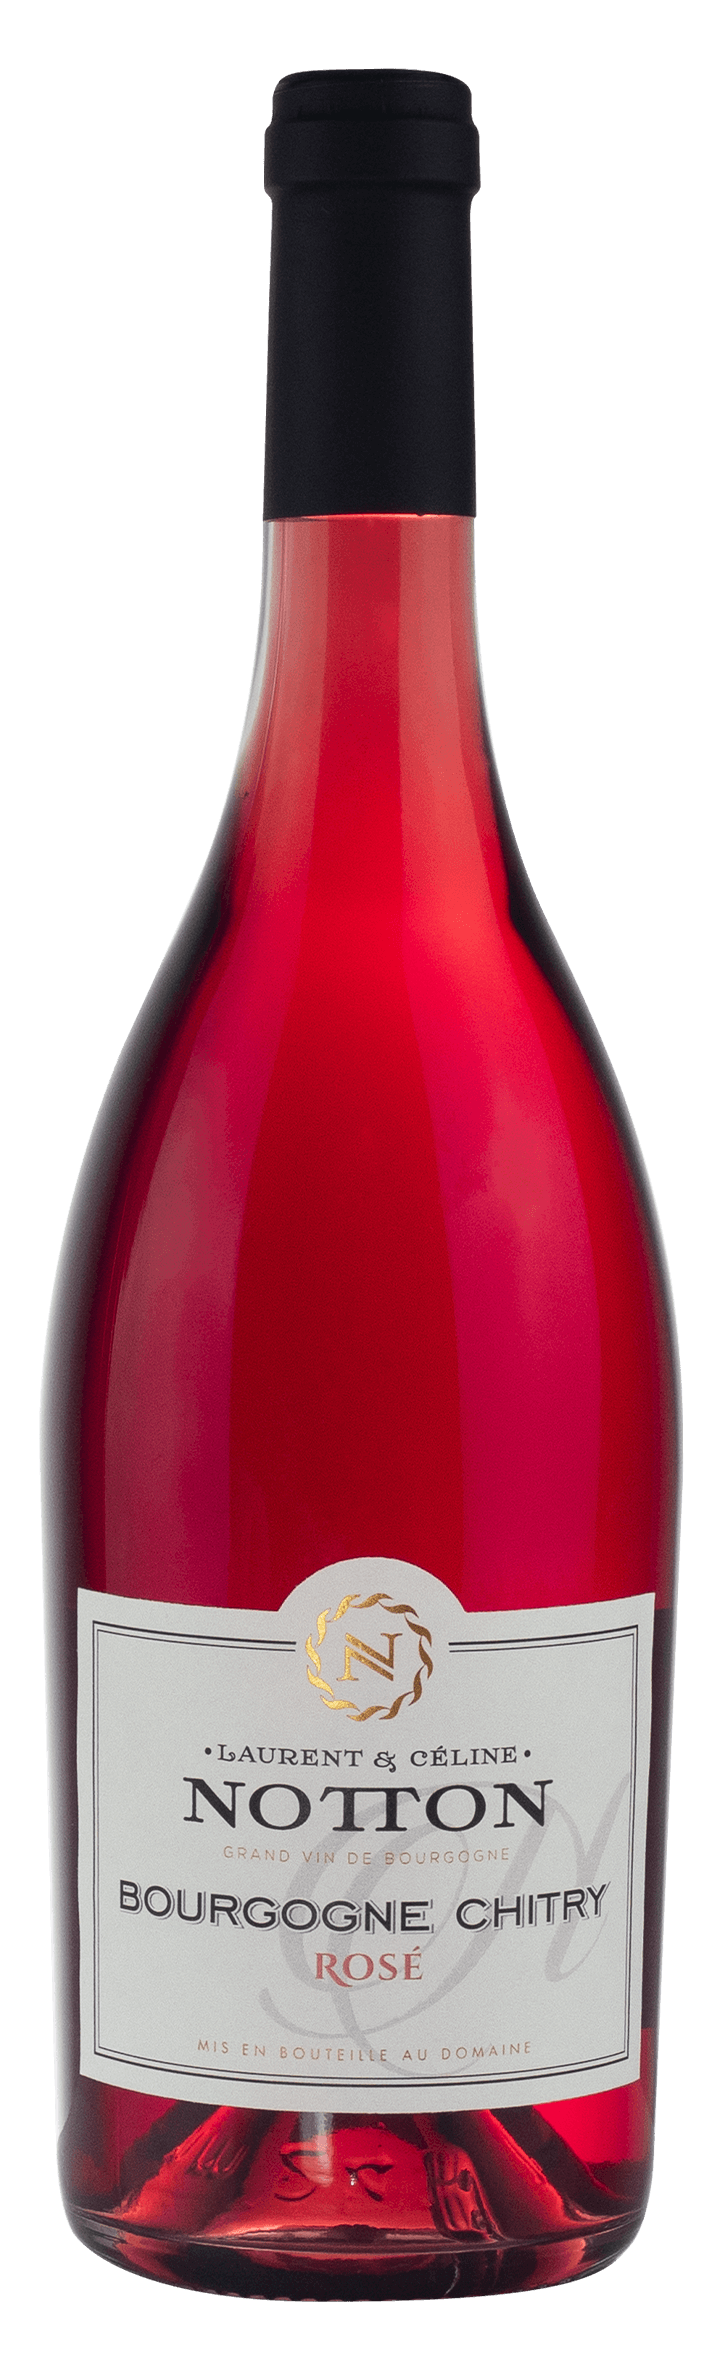 bottle NOTTON Bourgogne Chitry Rose 2018